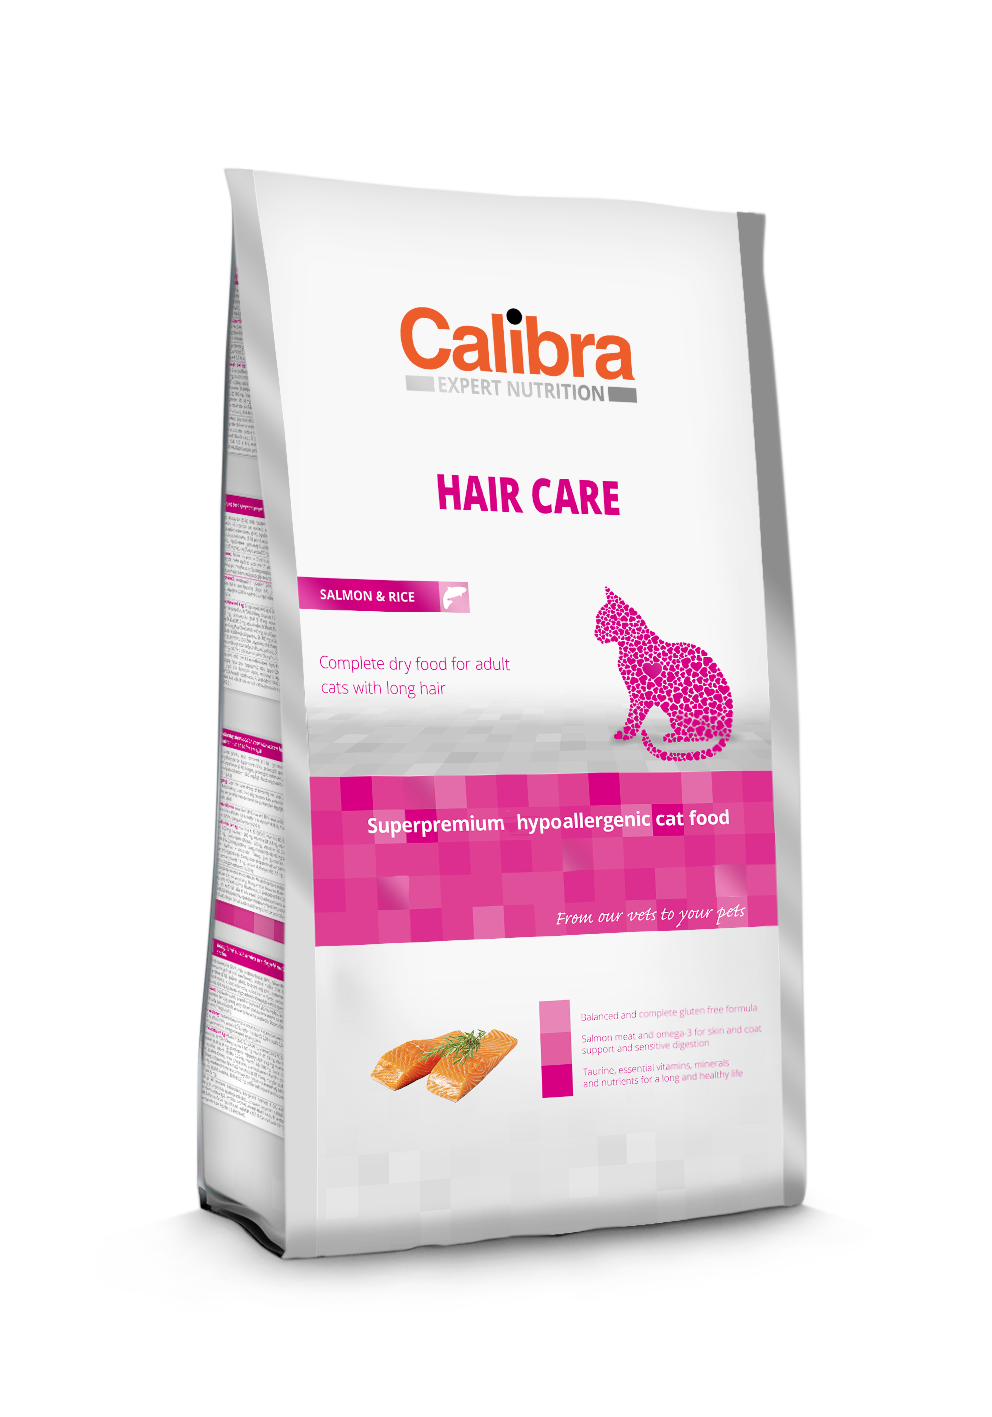 Calibra Cat EN Hair Care 2kg